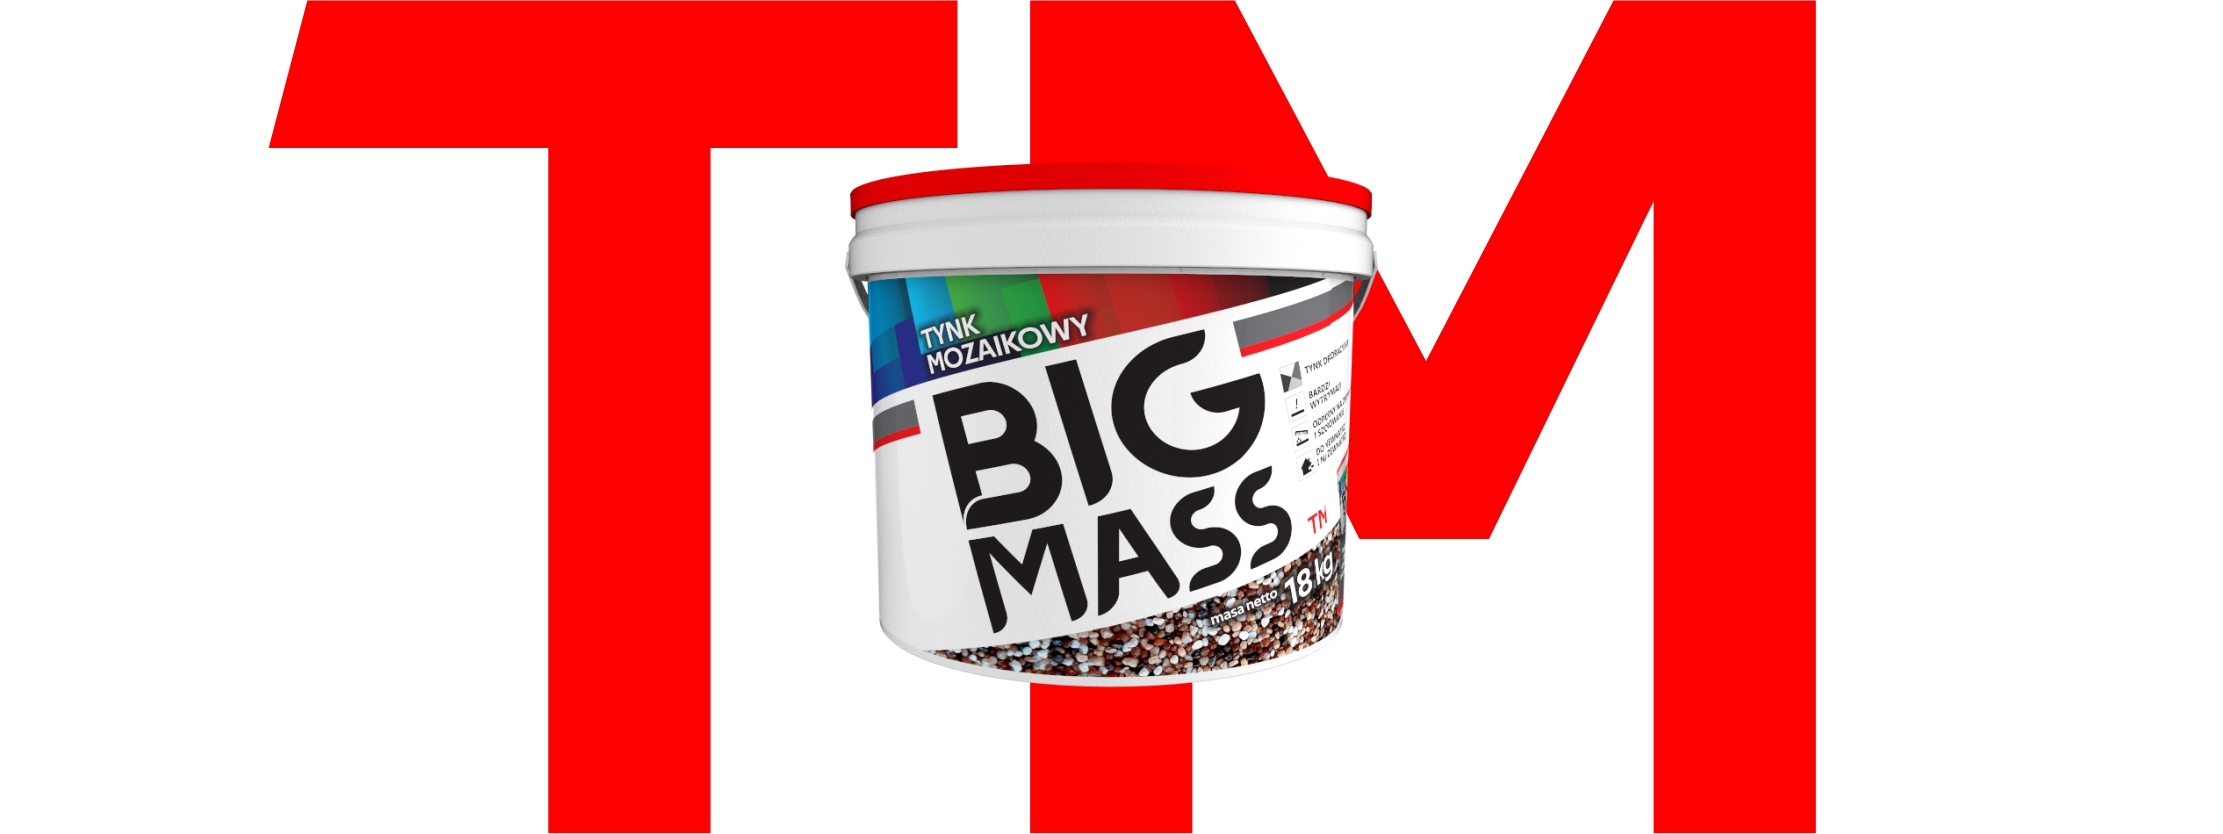 BIG MASS™ TM - gotowy tynk mozaikowy w różnych kolorach